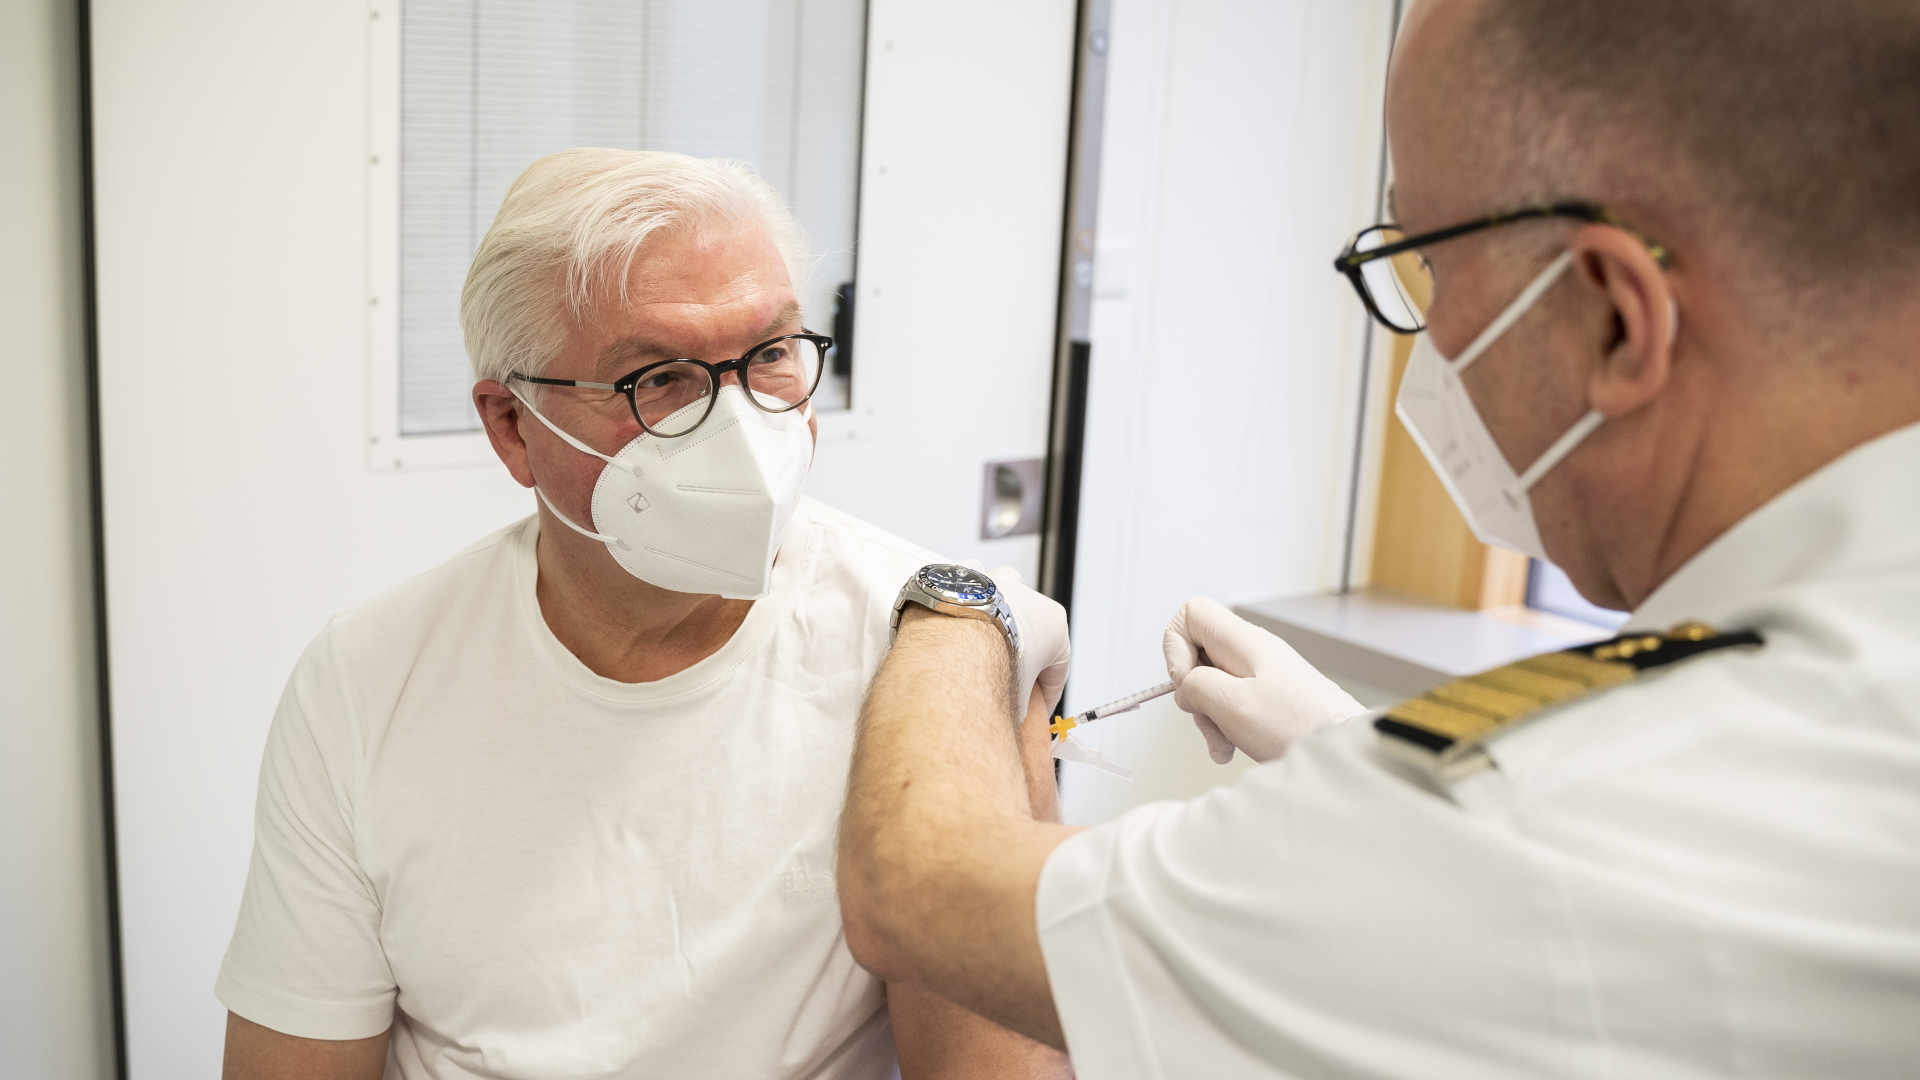 Bundespräsident Frank-Walter Steinmeier bei der Covid-19-Impfung  | EPA